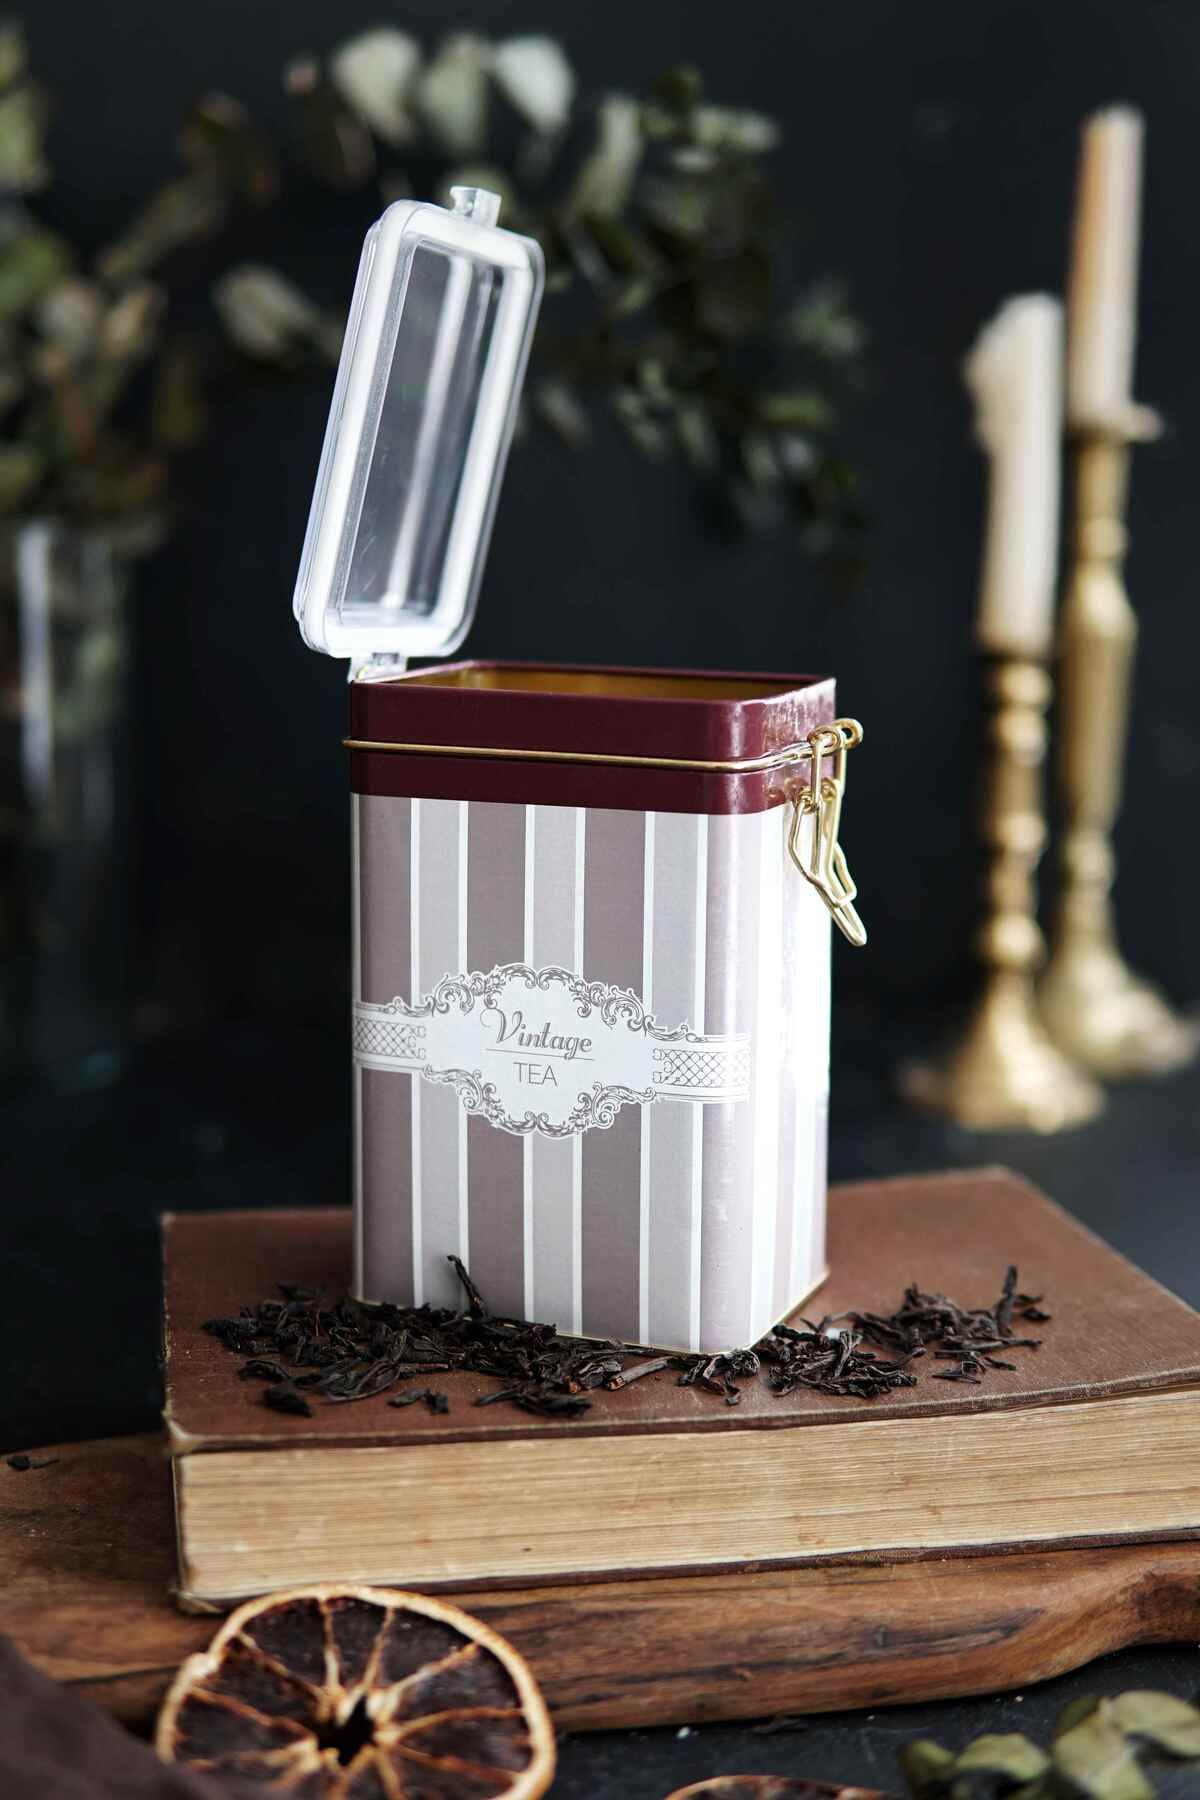 Elegance Tea Desenli Kilitli Kapaklı Dikdörtgen Metal Kutu, 7.5 x 10 x 15 cm, 1 lt